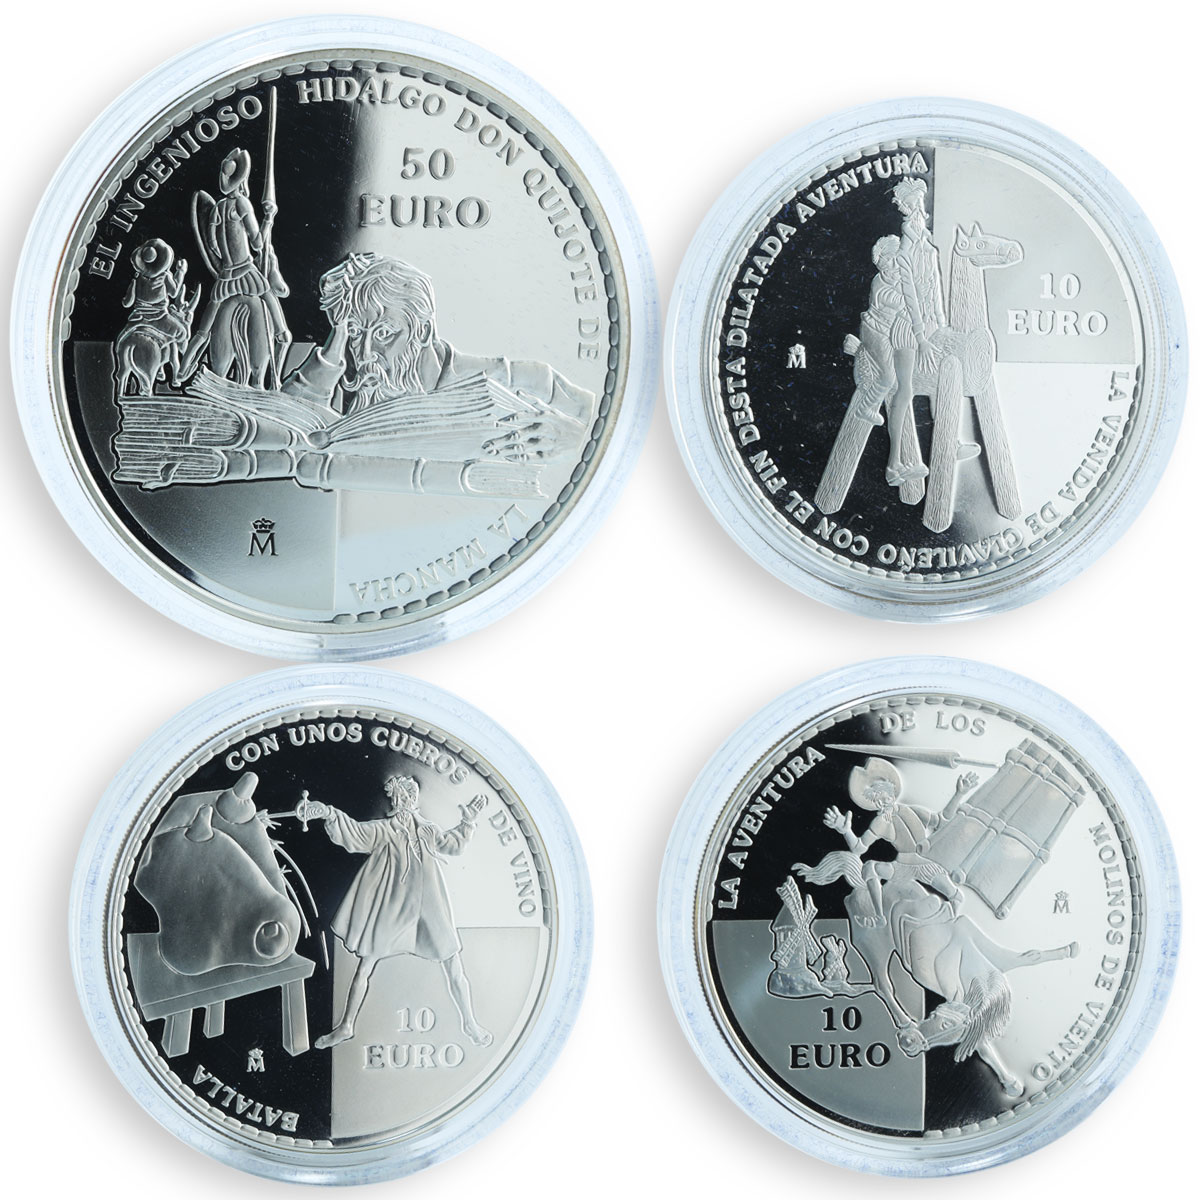 Spain set of 4 coins Don Quixote de la Mancha silver proof 2005